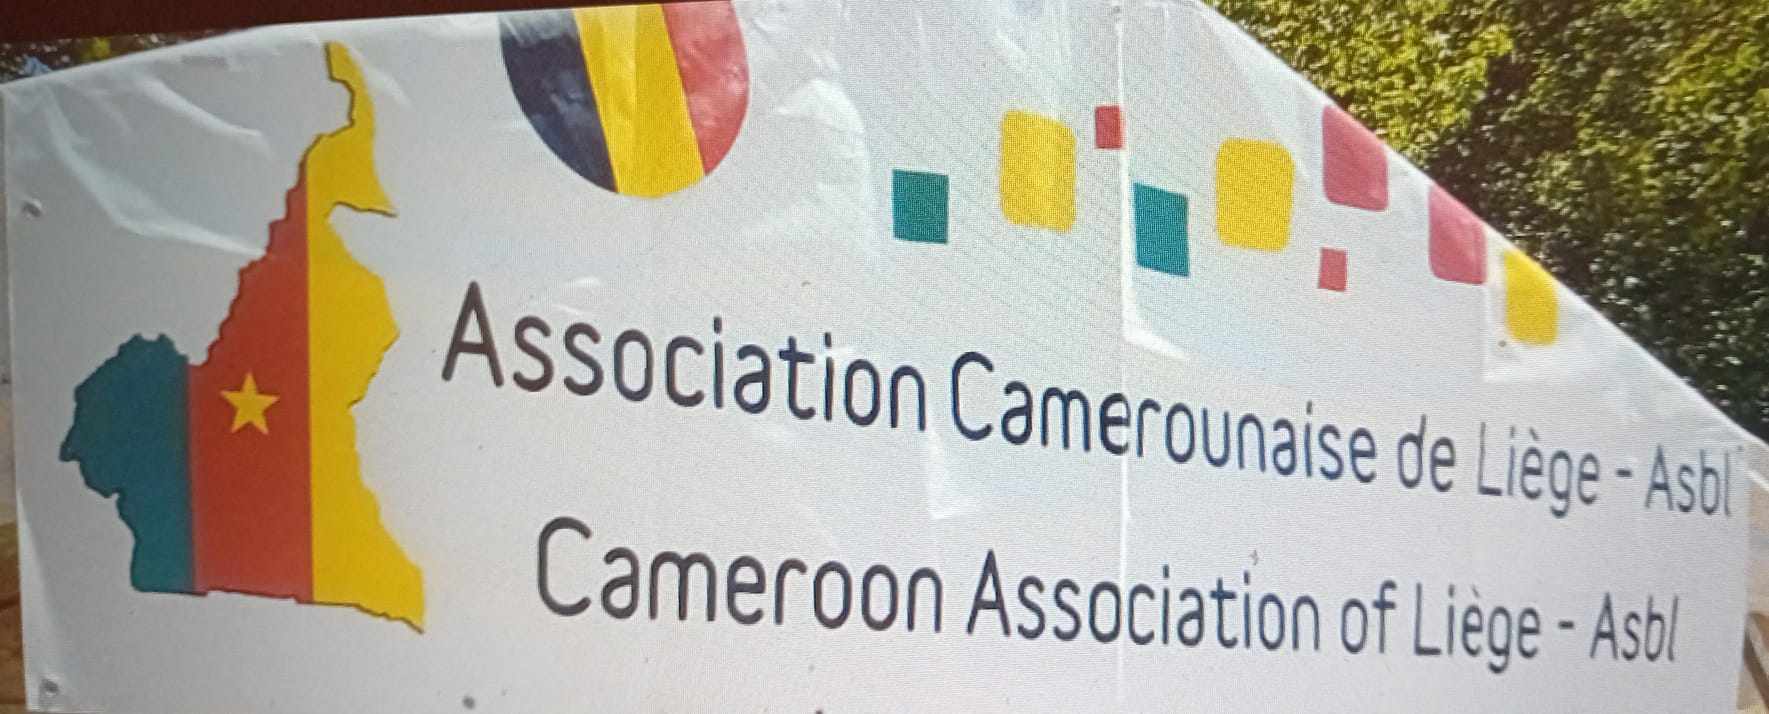 Association Camerounaise de Liège